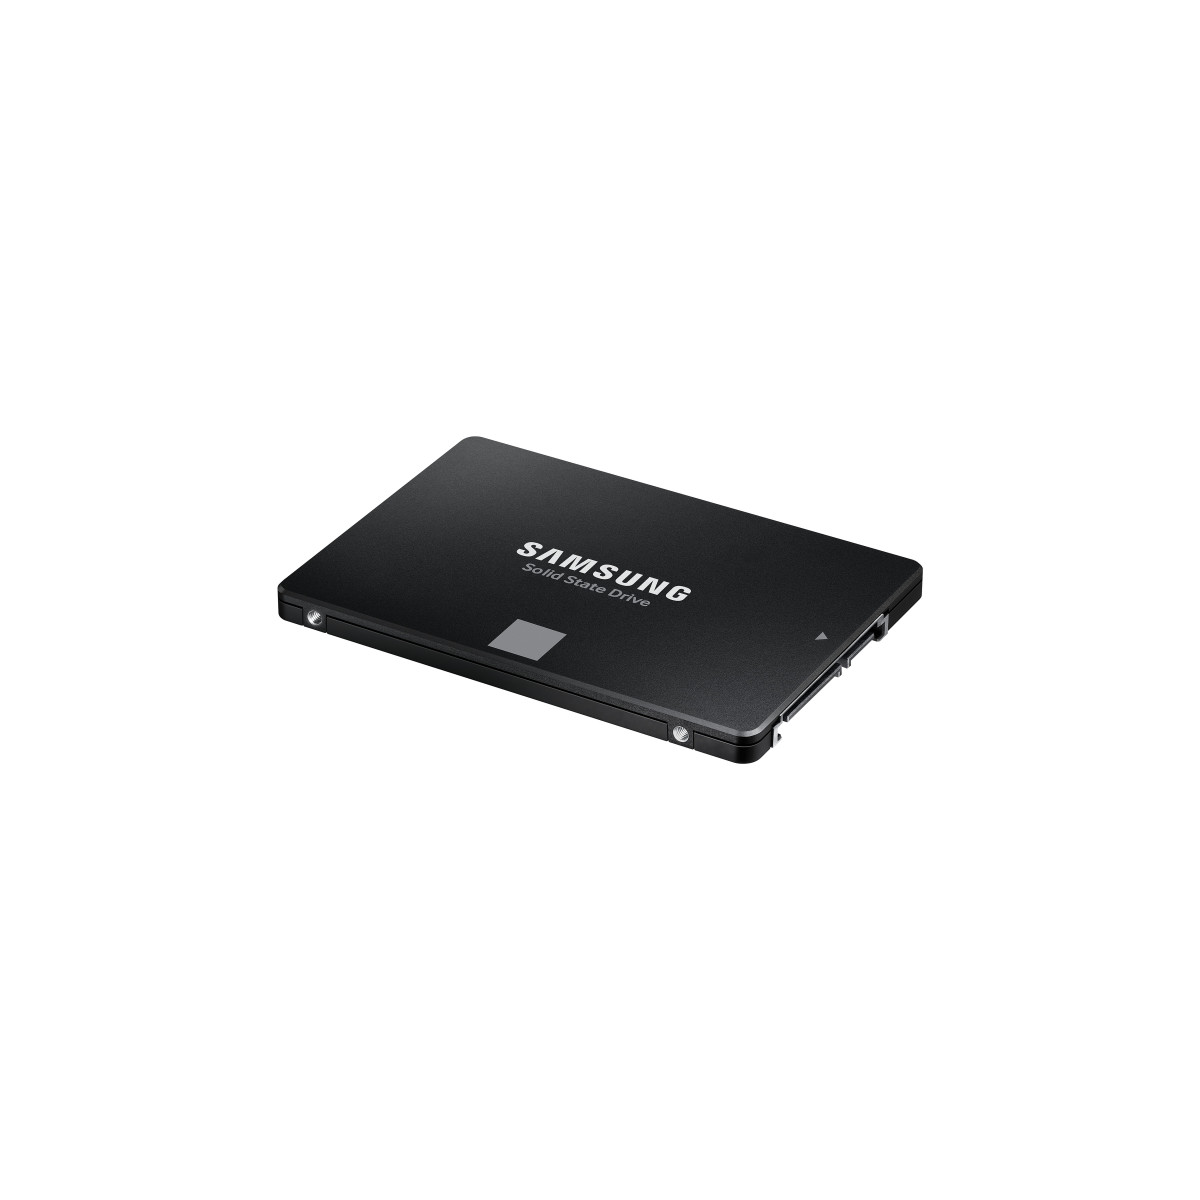 SSD Int 4TB 870 EVO SATA 2.5